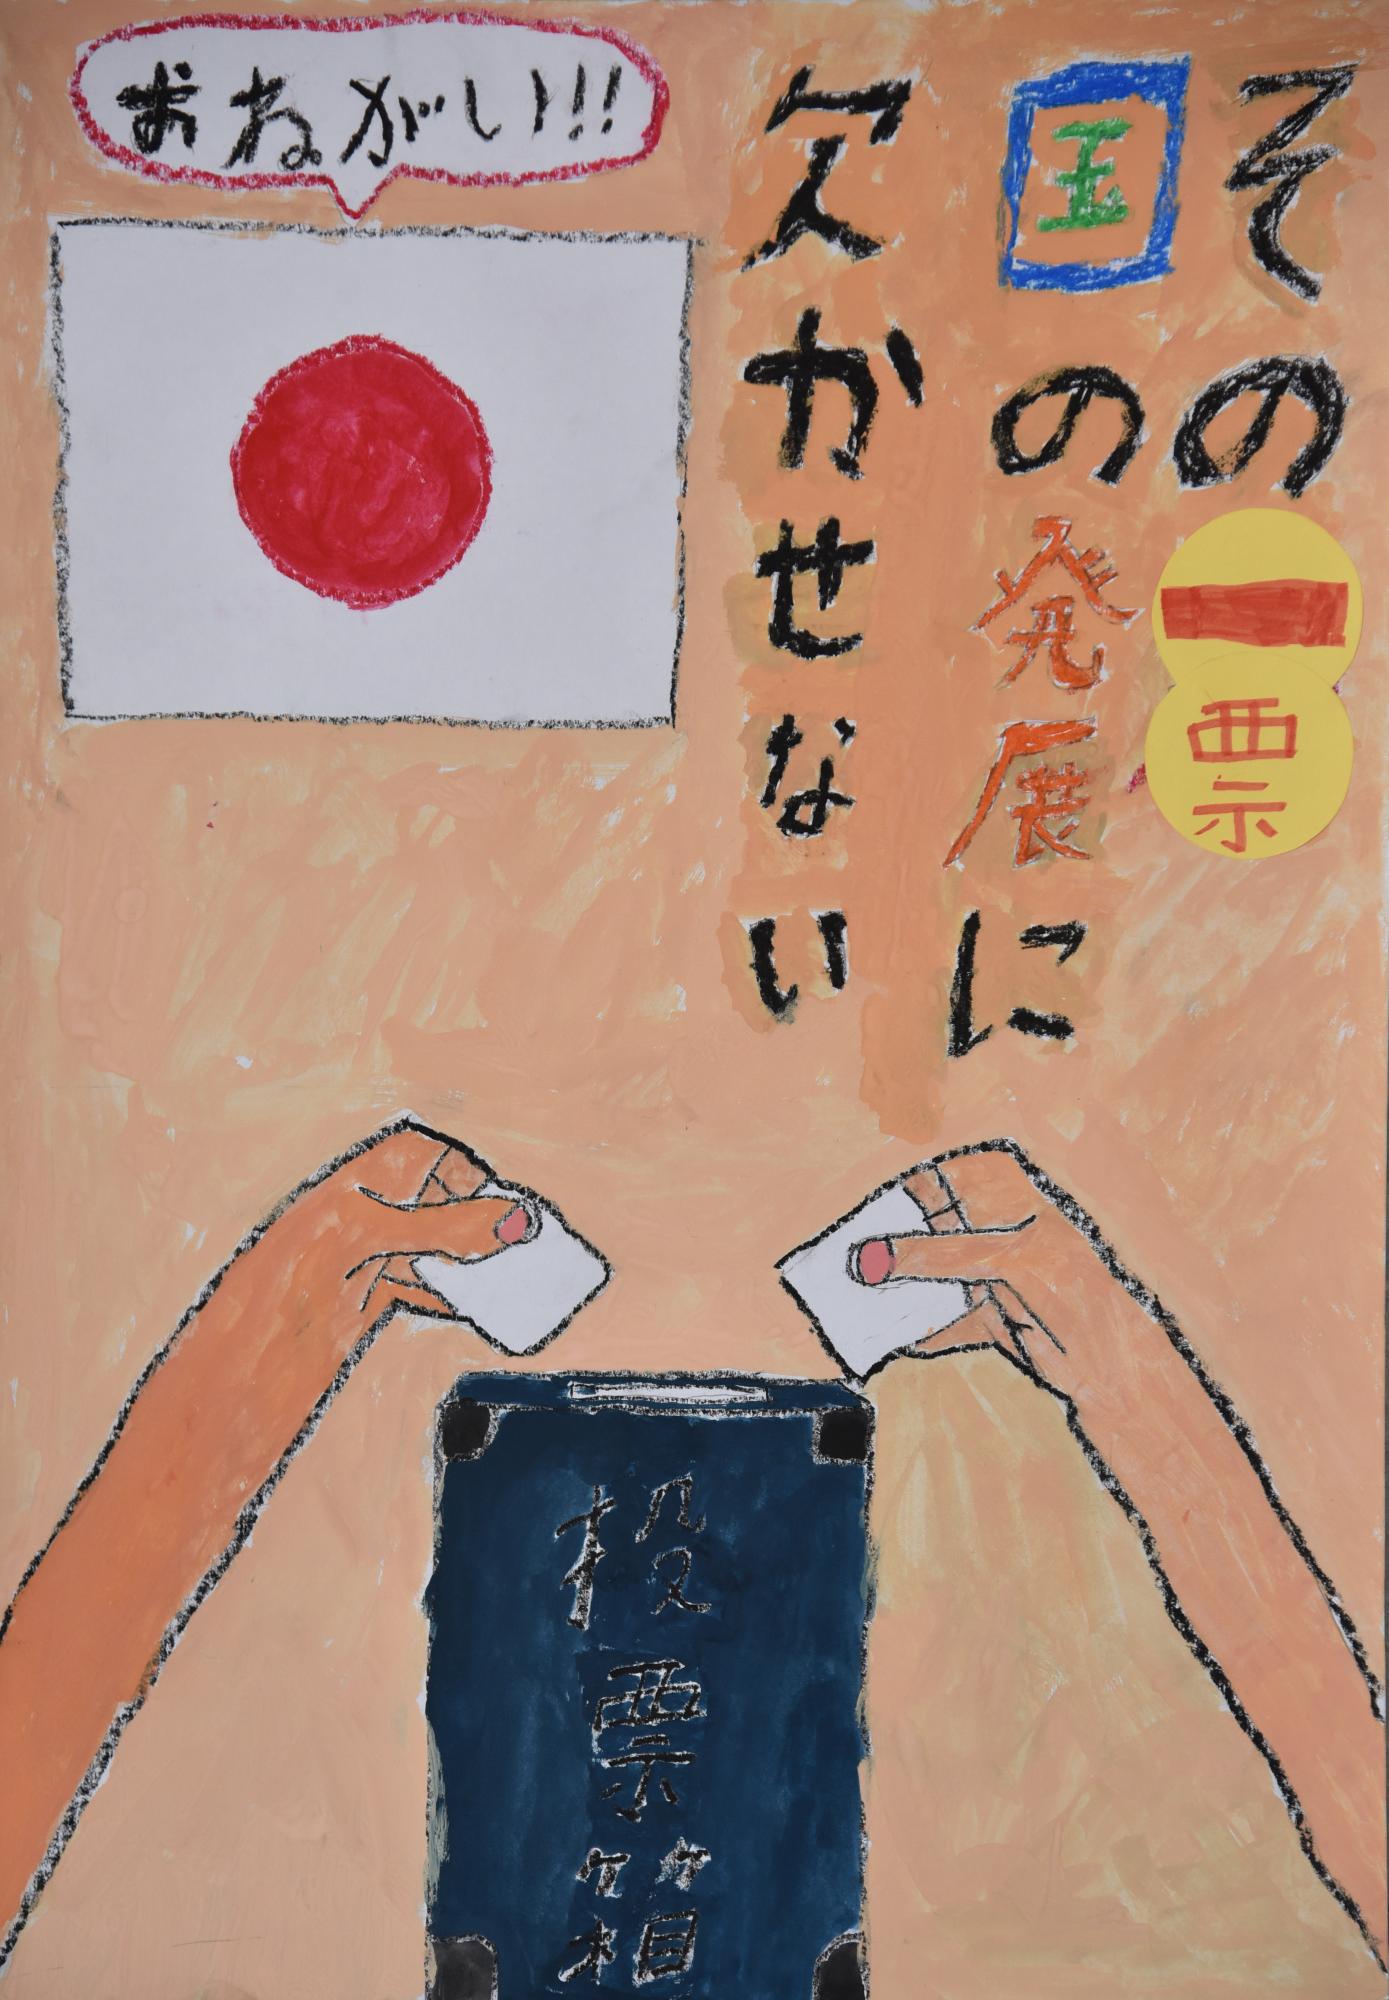 「その一票国の発展に欠かせない」日本国旗と二本の腕が投票箱に投票しているポスター